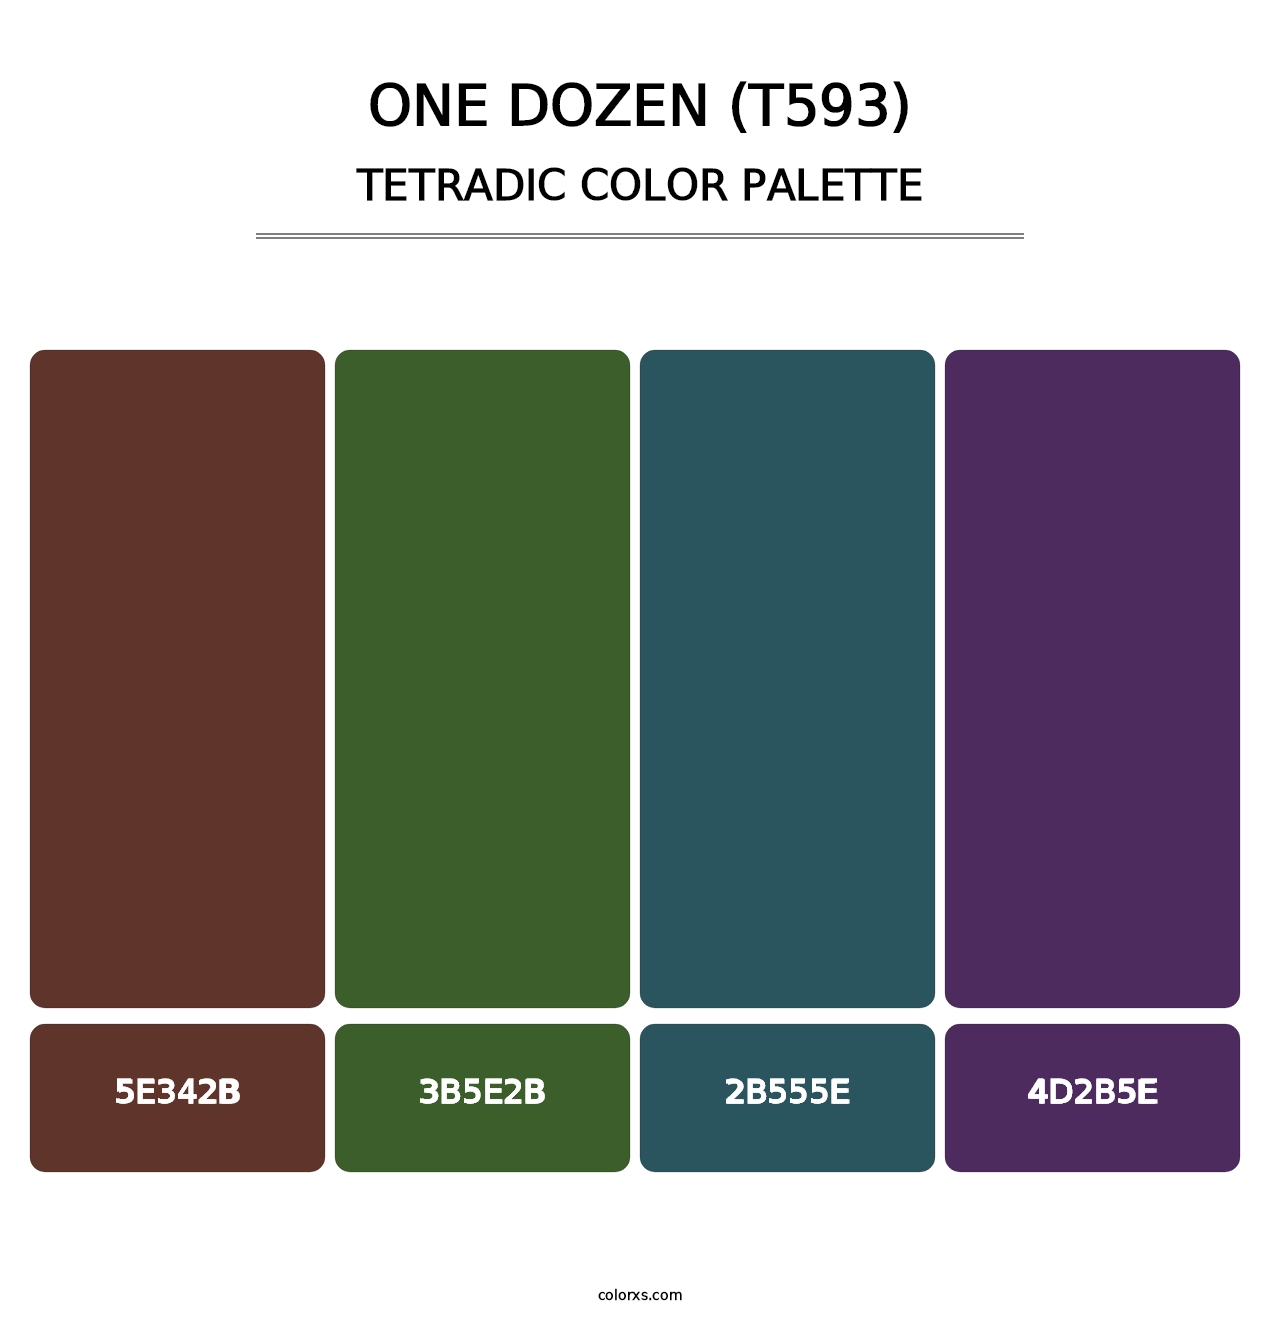 One Dozen (T593) - Tetradic Color Palette